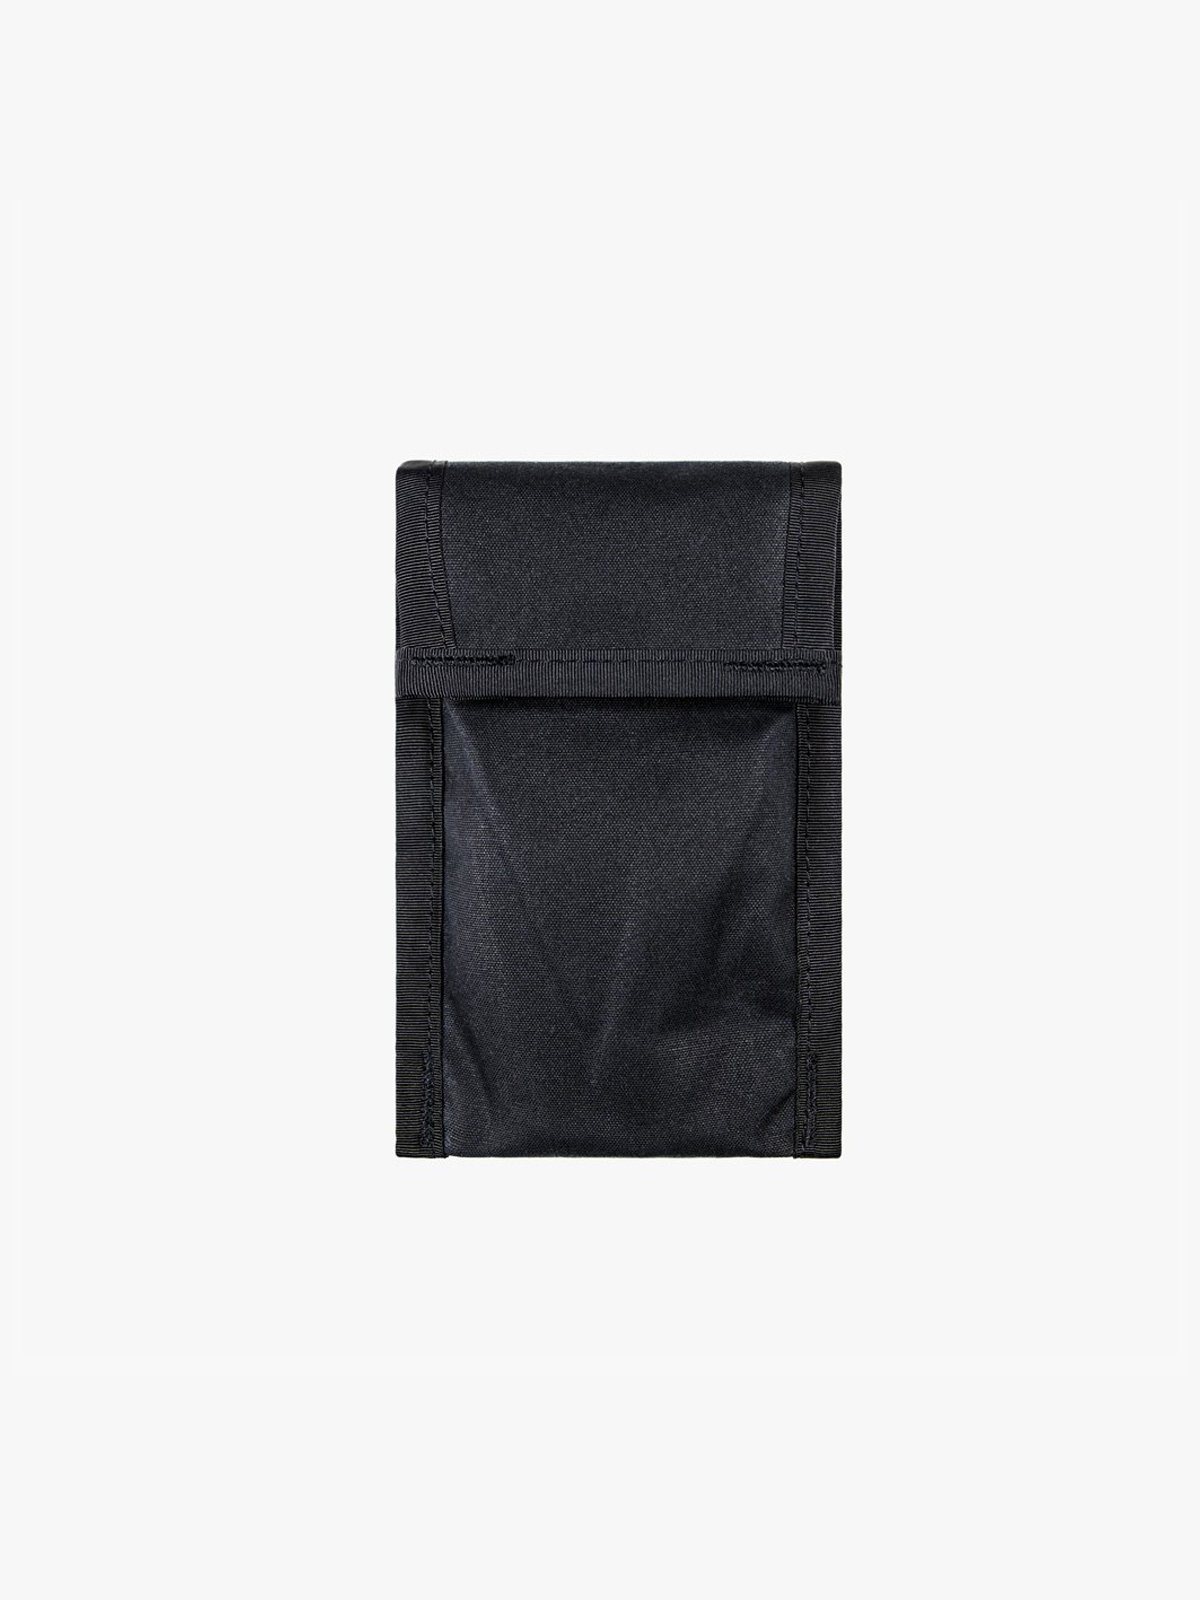 Arkiv Cell Pocket by Mission Workshop - Weatherproof Bags & Technical Apparel - San Francisco & Los Angeles - Construit pour durer - Garanti pour toujours